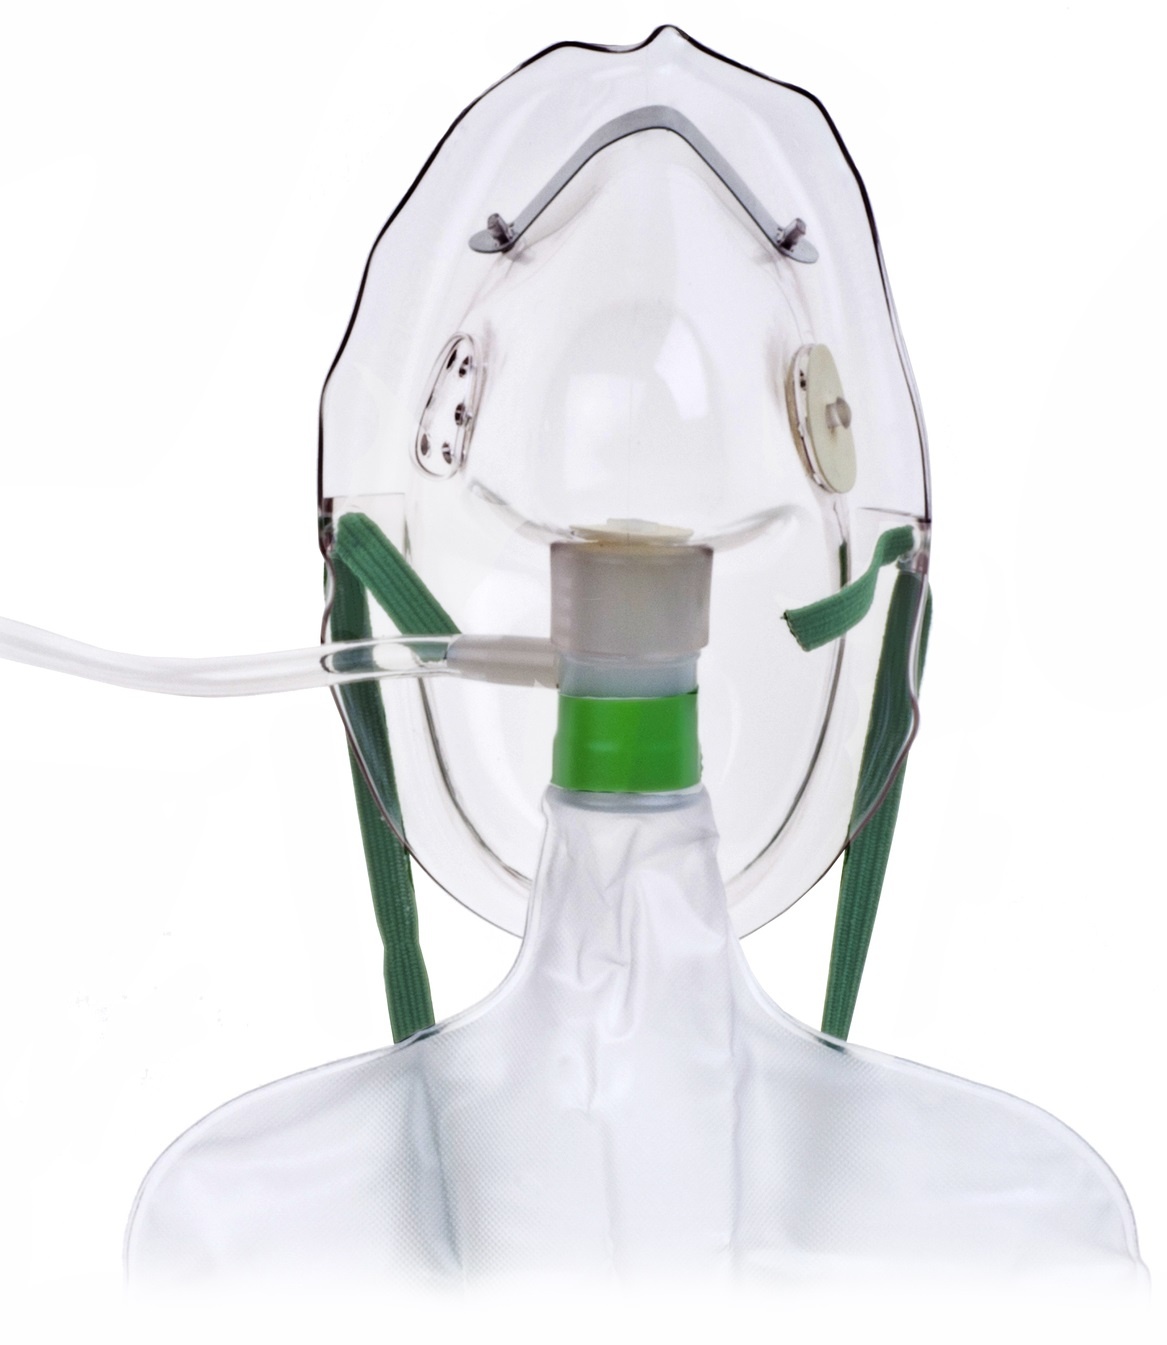 Hudson Mask Nonrebreathing with Safety Vent, Reservoir Bag & 7ft Tubing - Adult